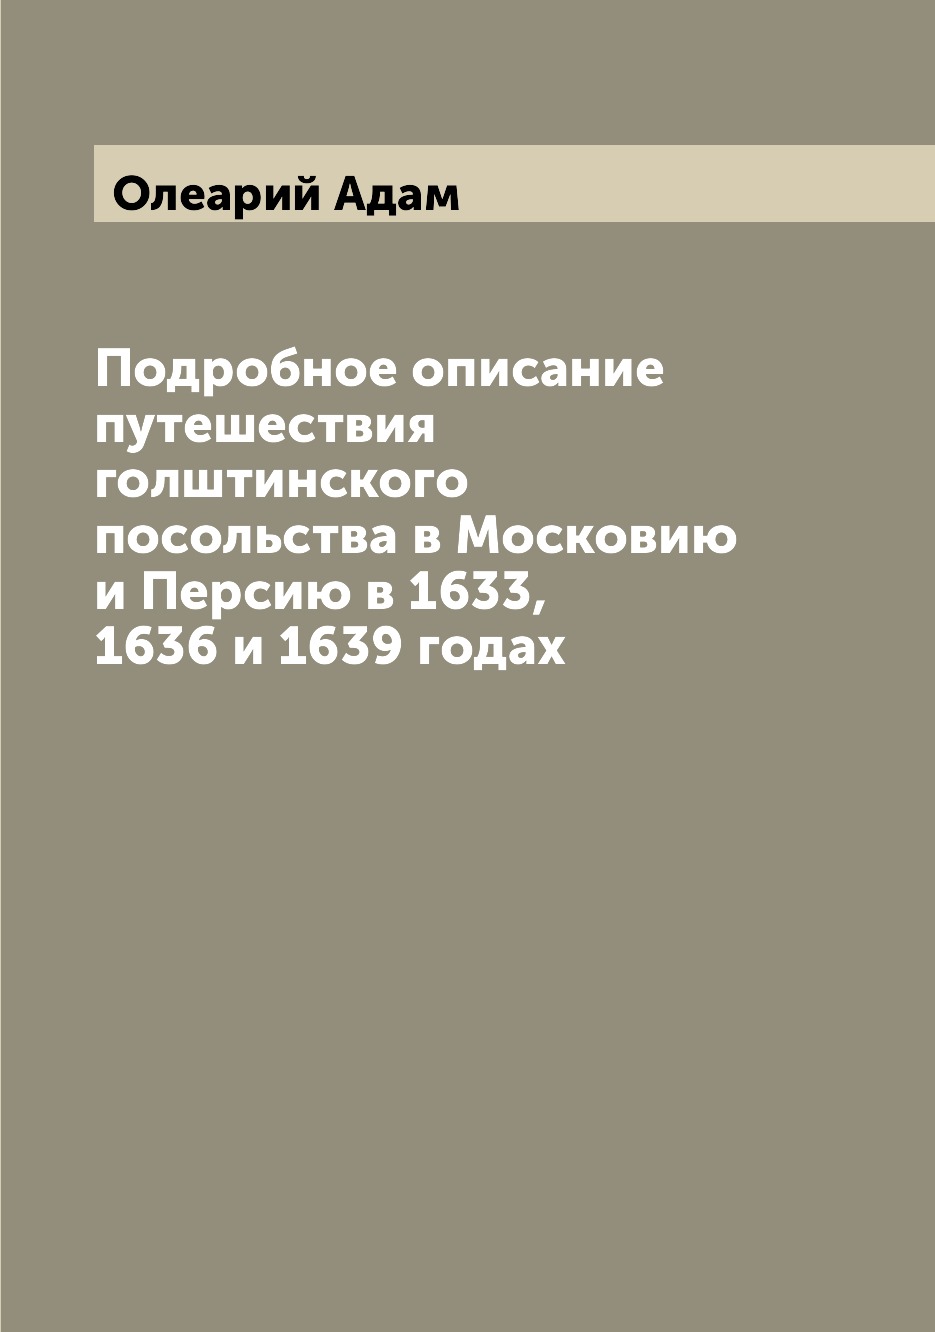 фото Книга подробное описание путешествия голштинского посольства в московию и персию в 1633... archive publica